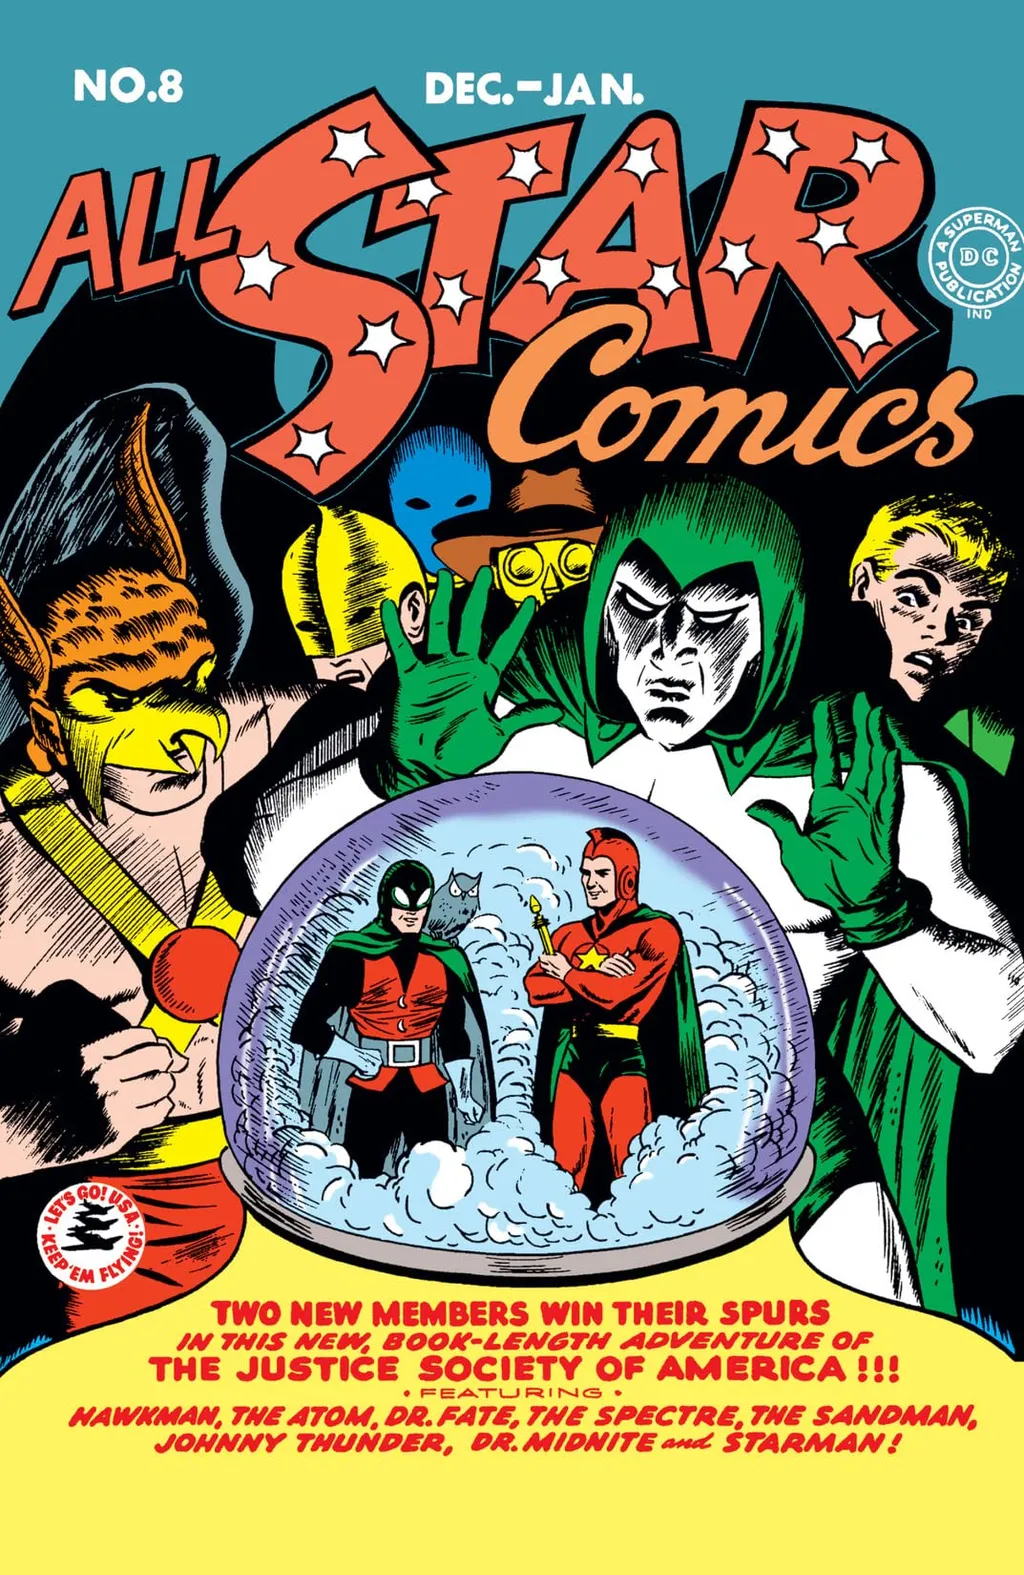 A világ 10 legdrágább képregénye comics 